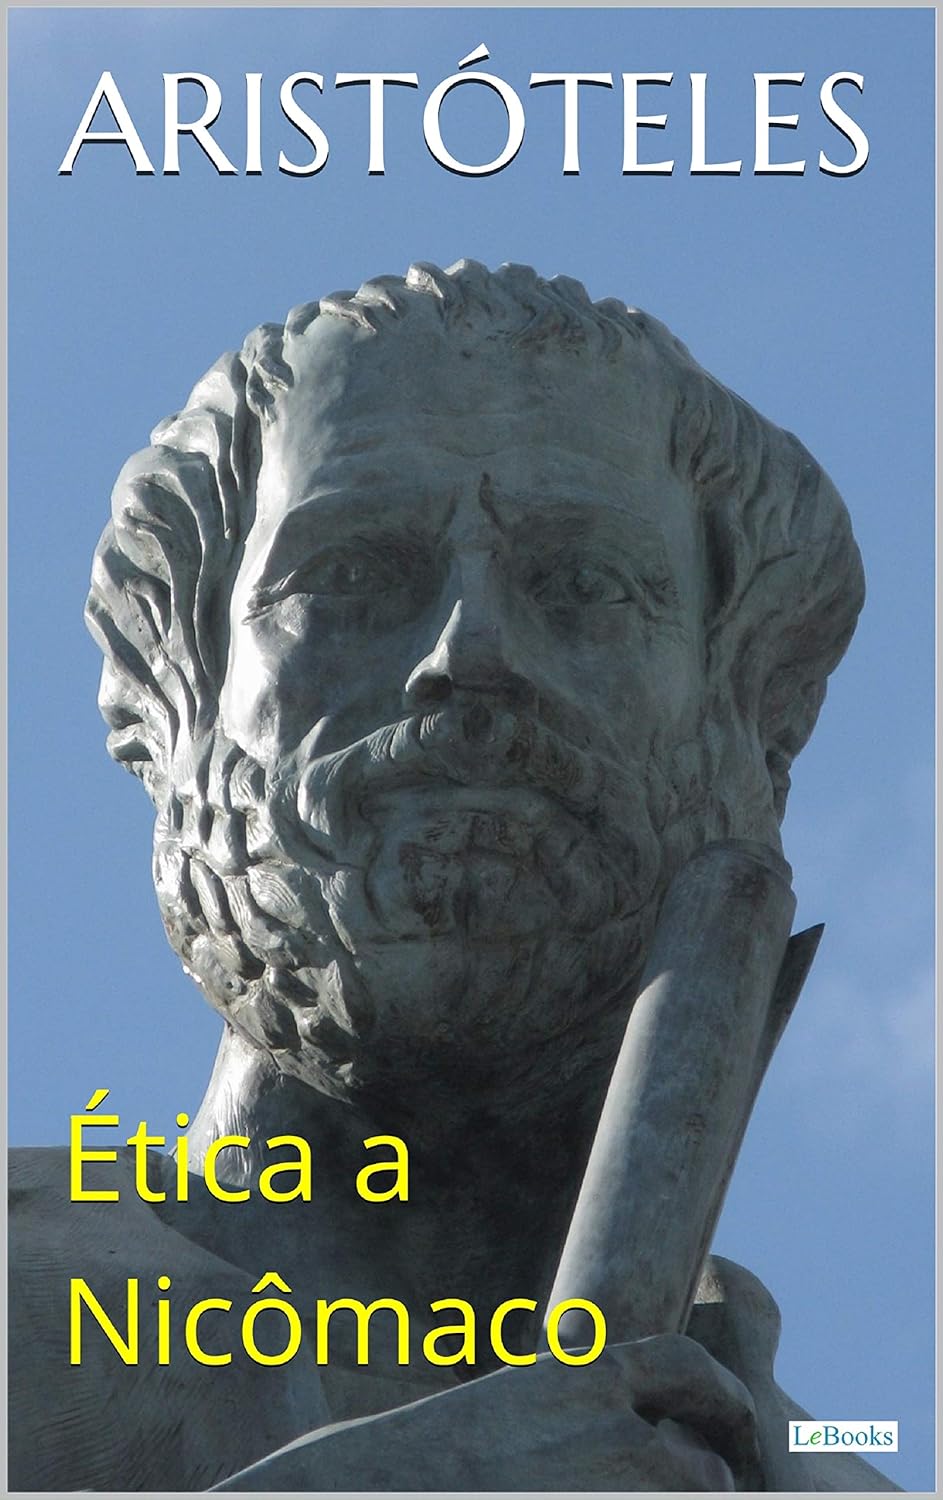 Aristóteles: Ética a Nicômaco (EBook, Português language, Lebooks Editora)